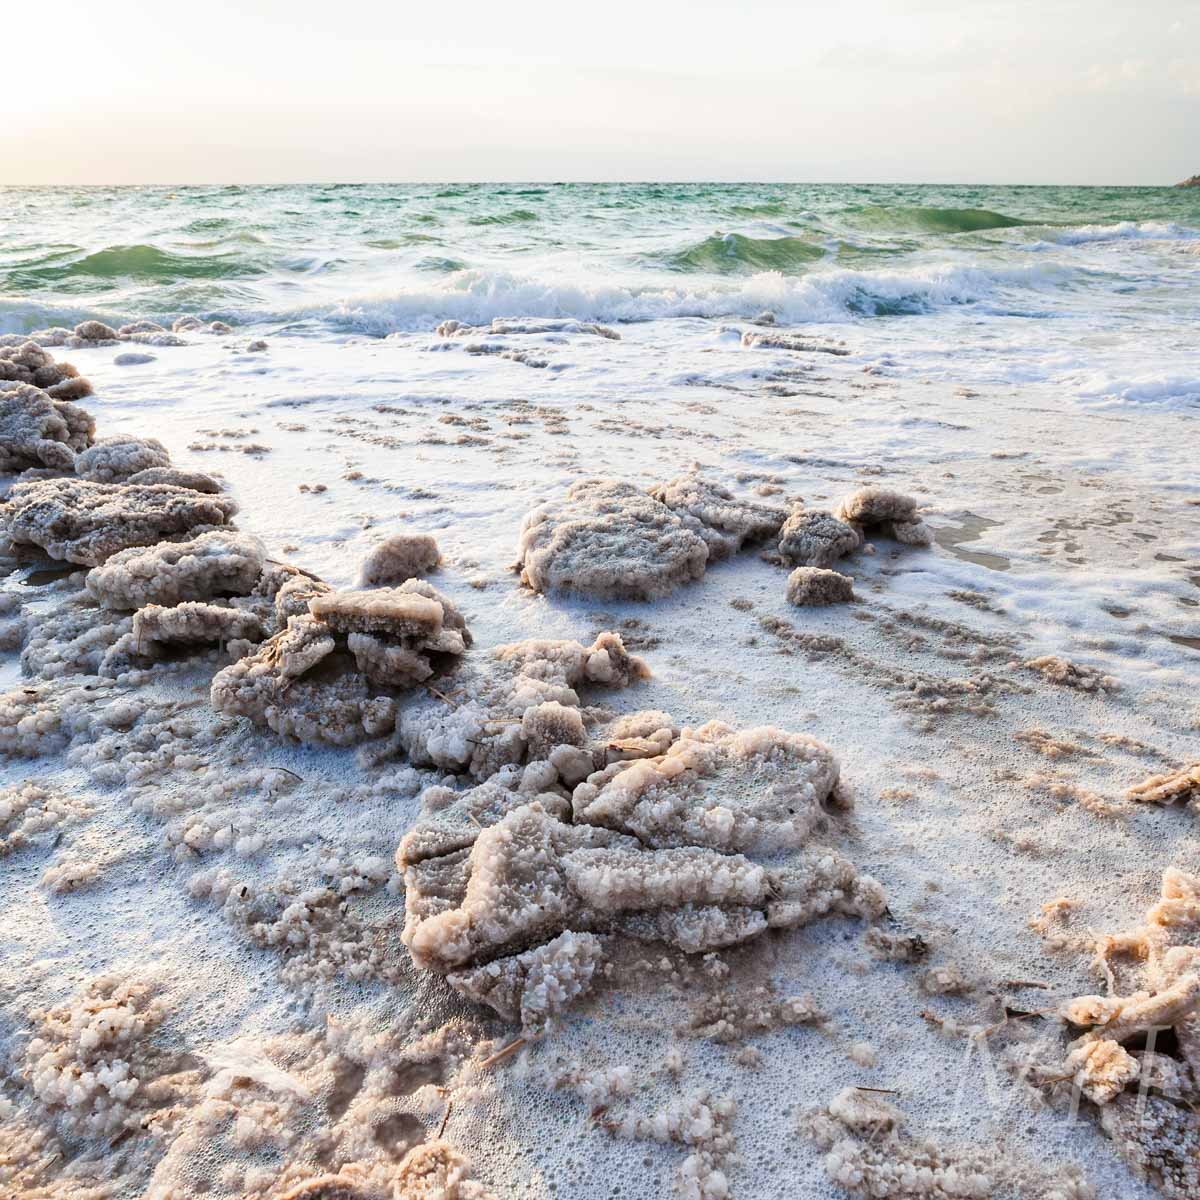 Sea Salt Spray: Your Tool to Beachy Hair